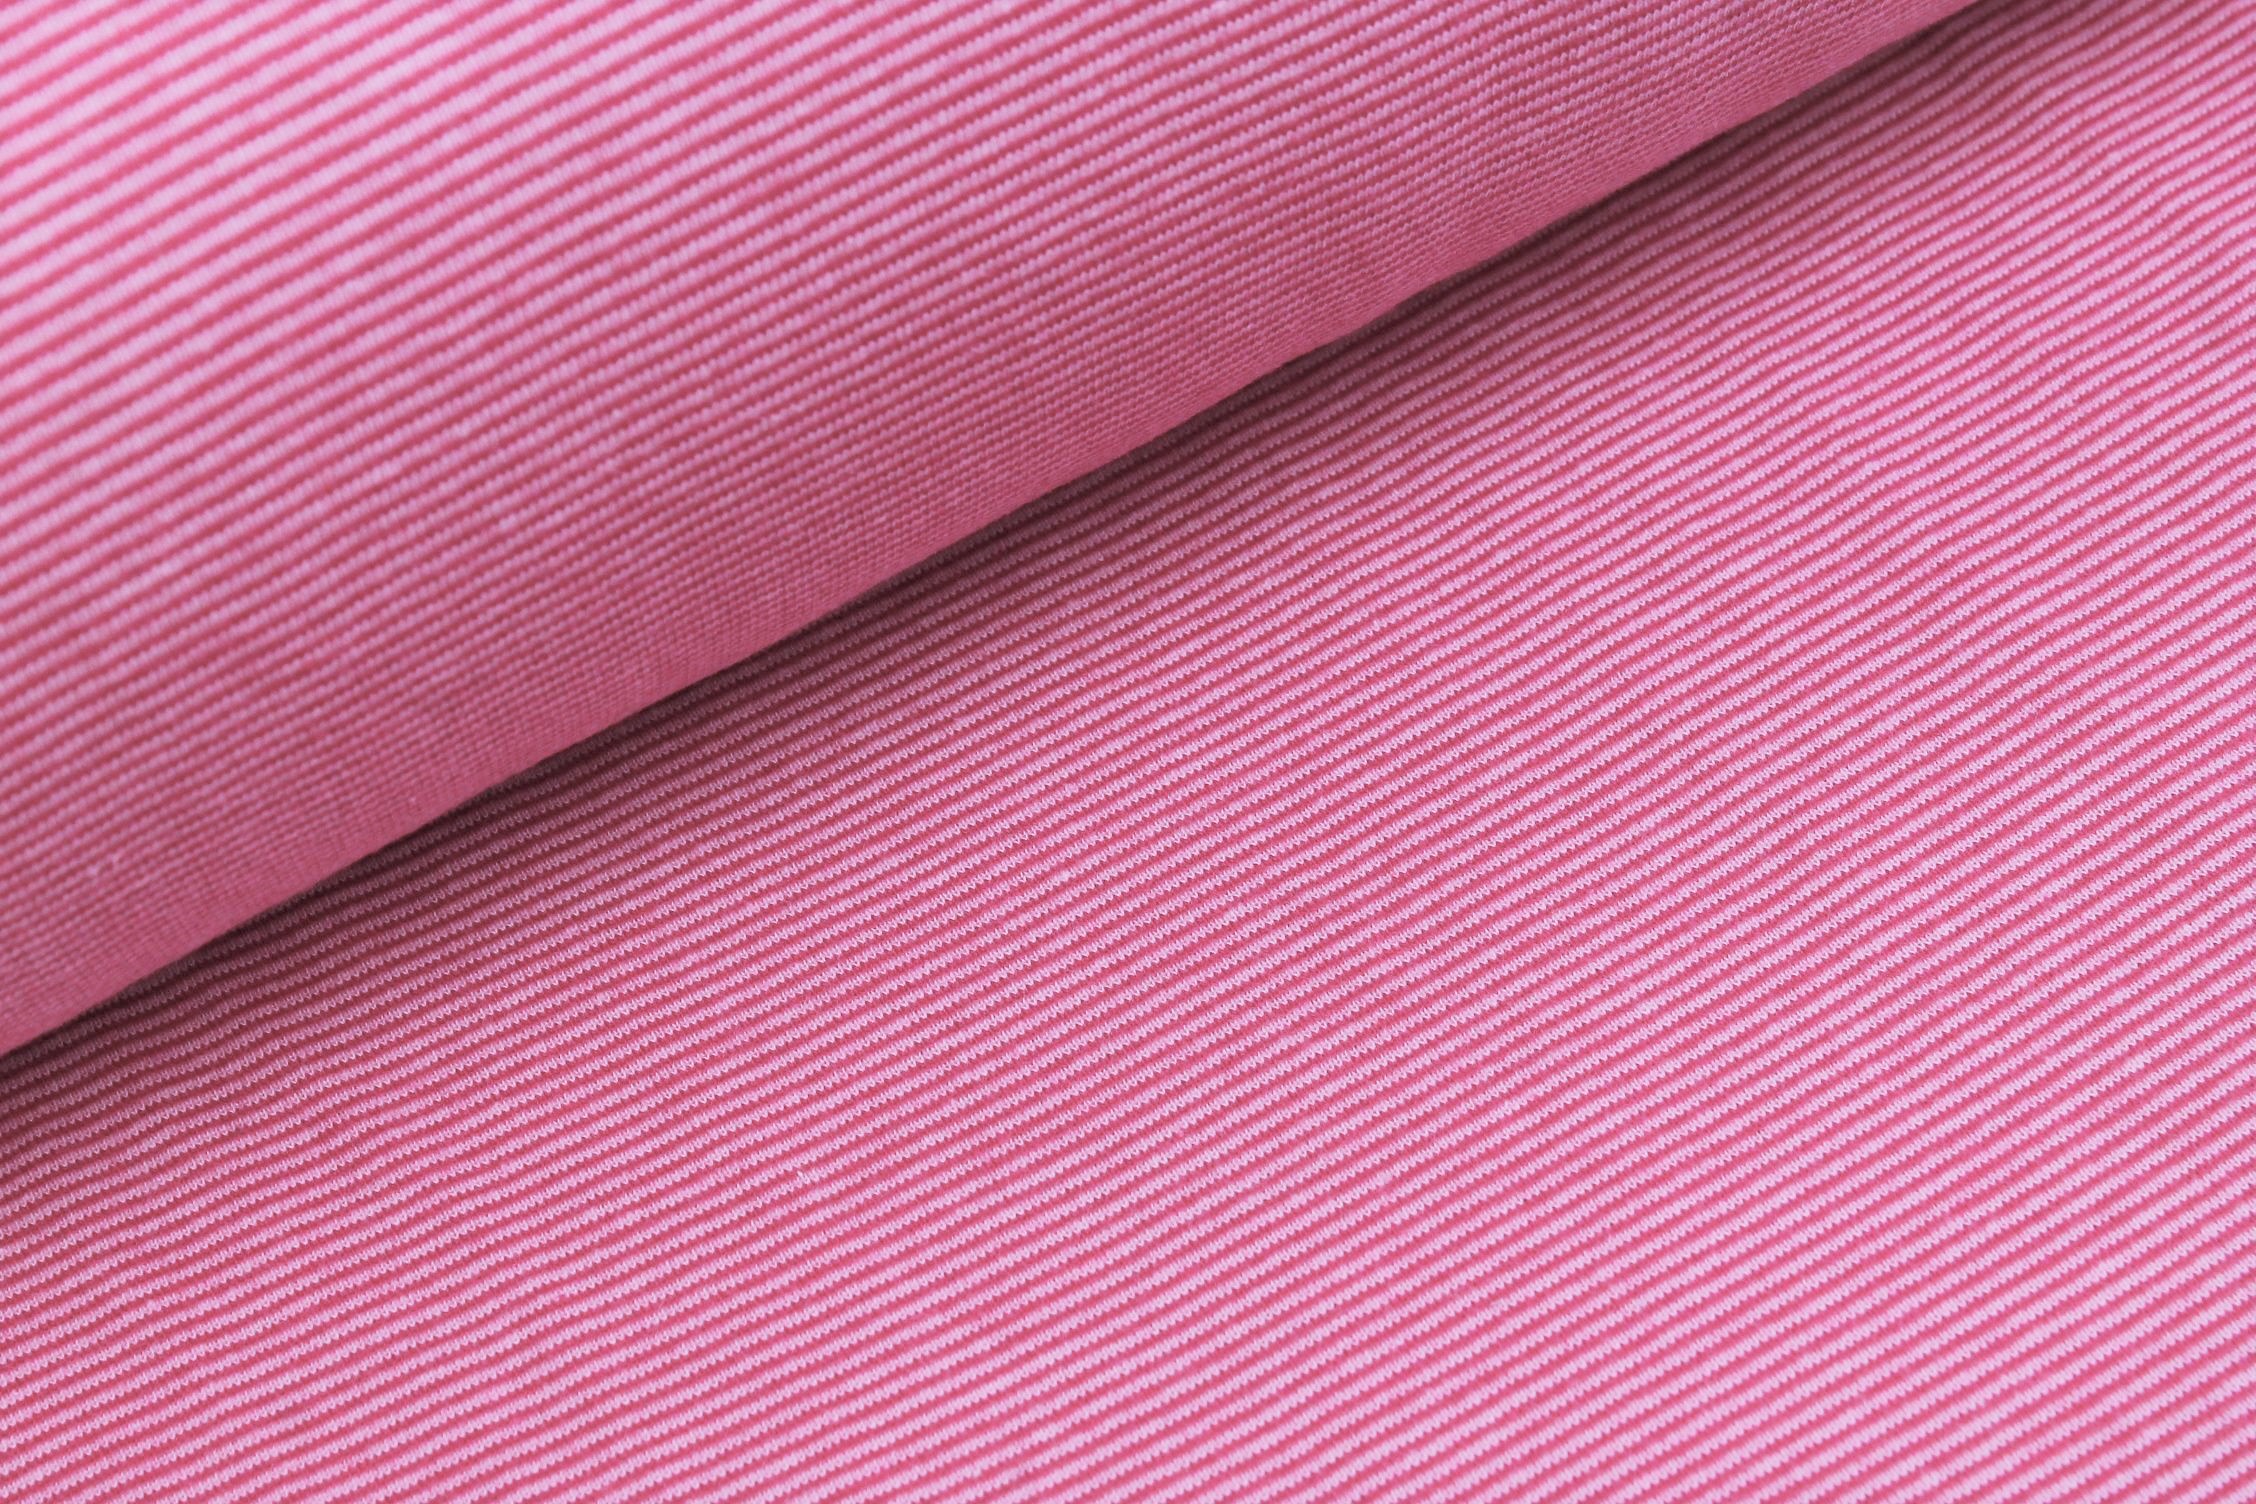 Bündchenstoff rosa/pink schmal gestreift     